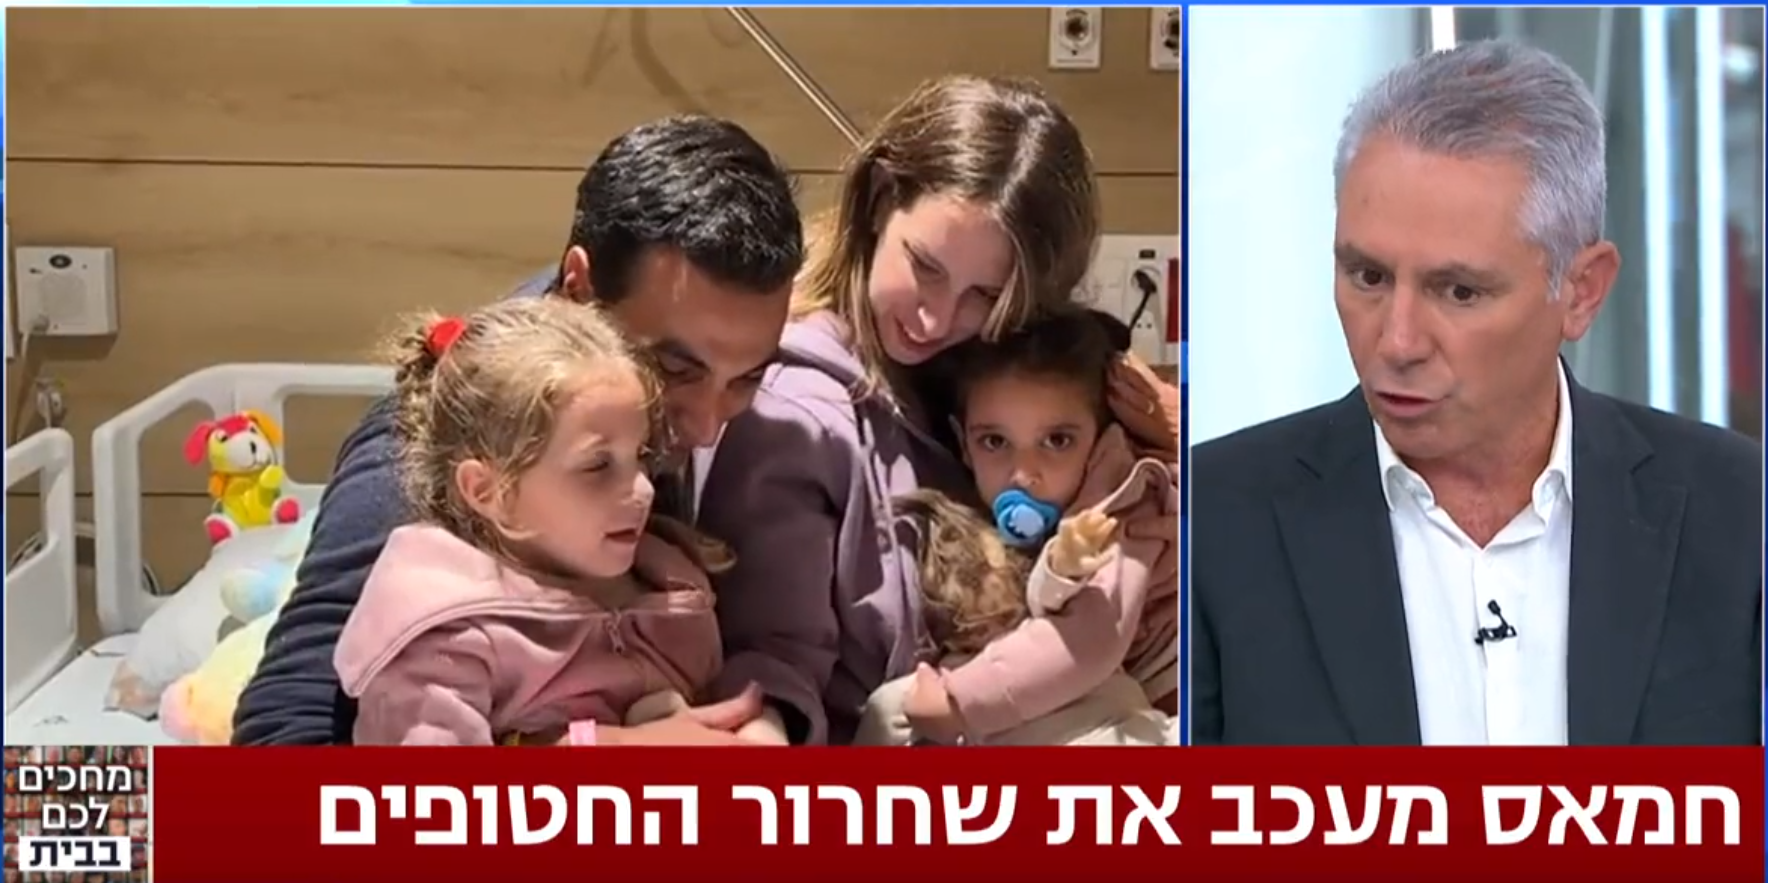 غضب في إسرائيل ومطالبة بوقف بث مشاهد الود والإنسانية خلال تسليم حماس للأسرى الإسرائيليين